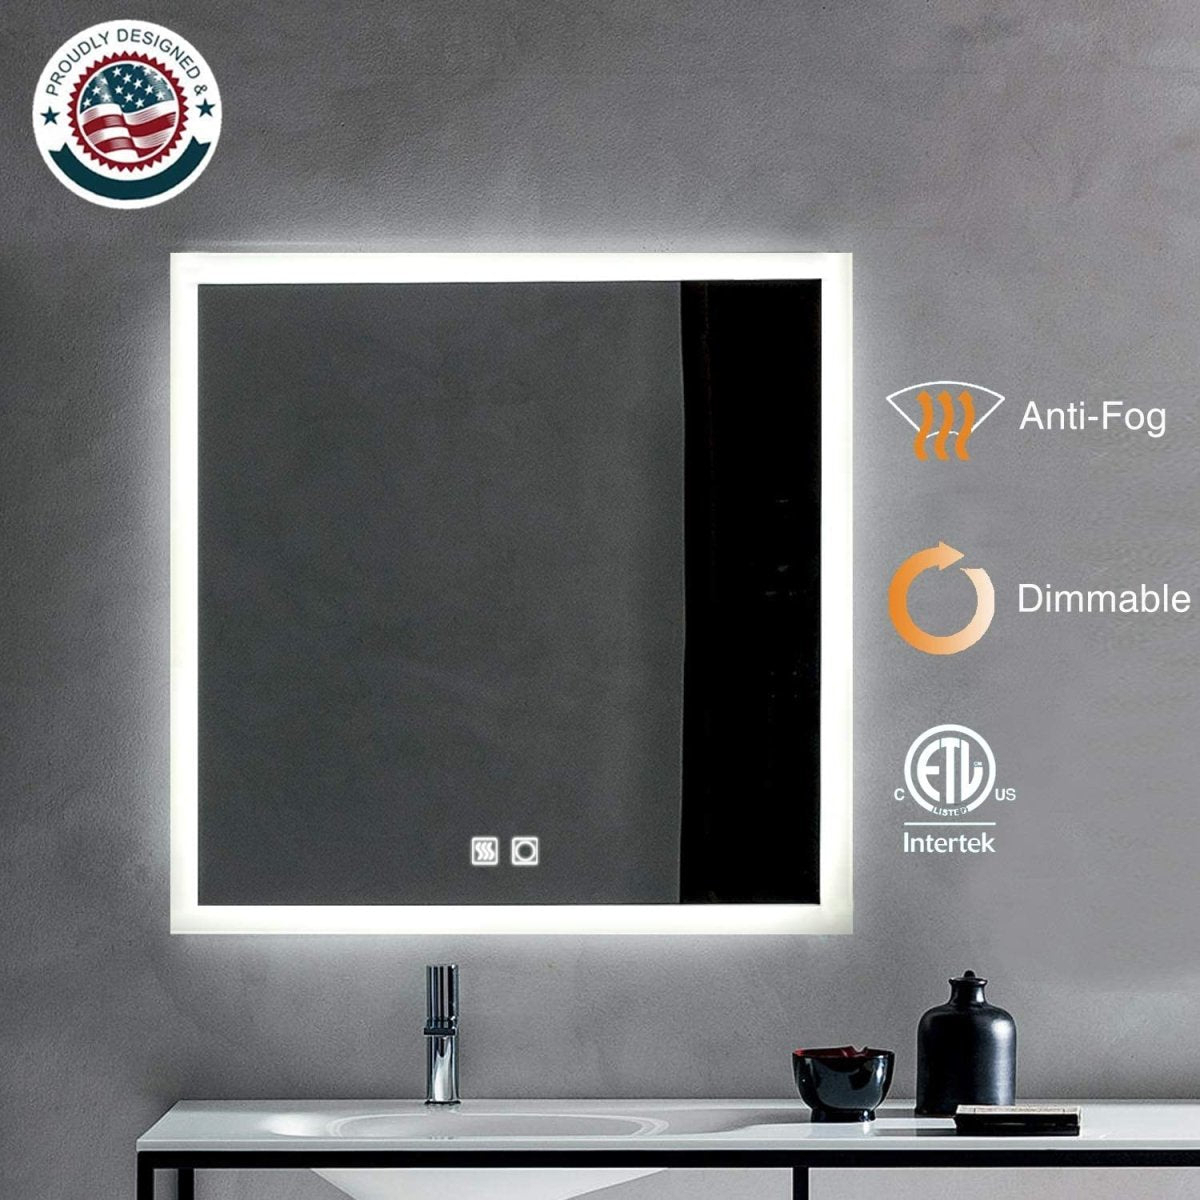 Ascend-M1 35 W X 35 H Square Backlit LED Lighted Bathroom Vanity Mirror